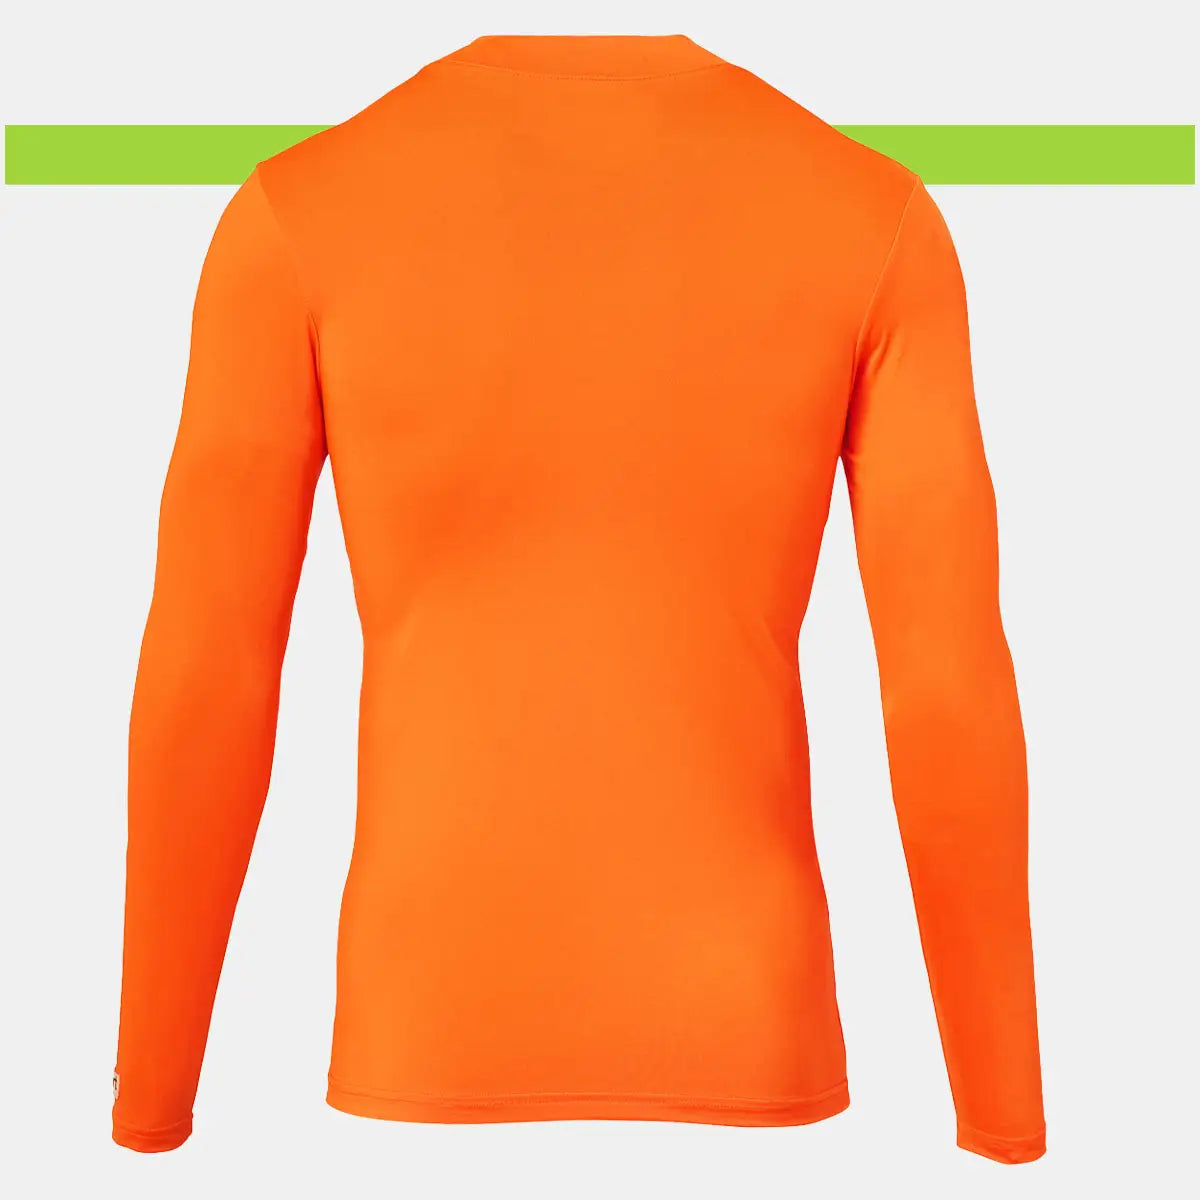 Sottomaglia elasticizzata Uhlsport Distinction Colors arancio schiena